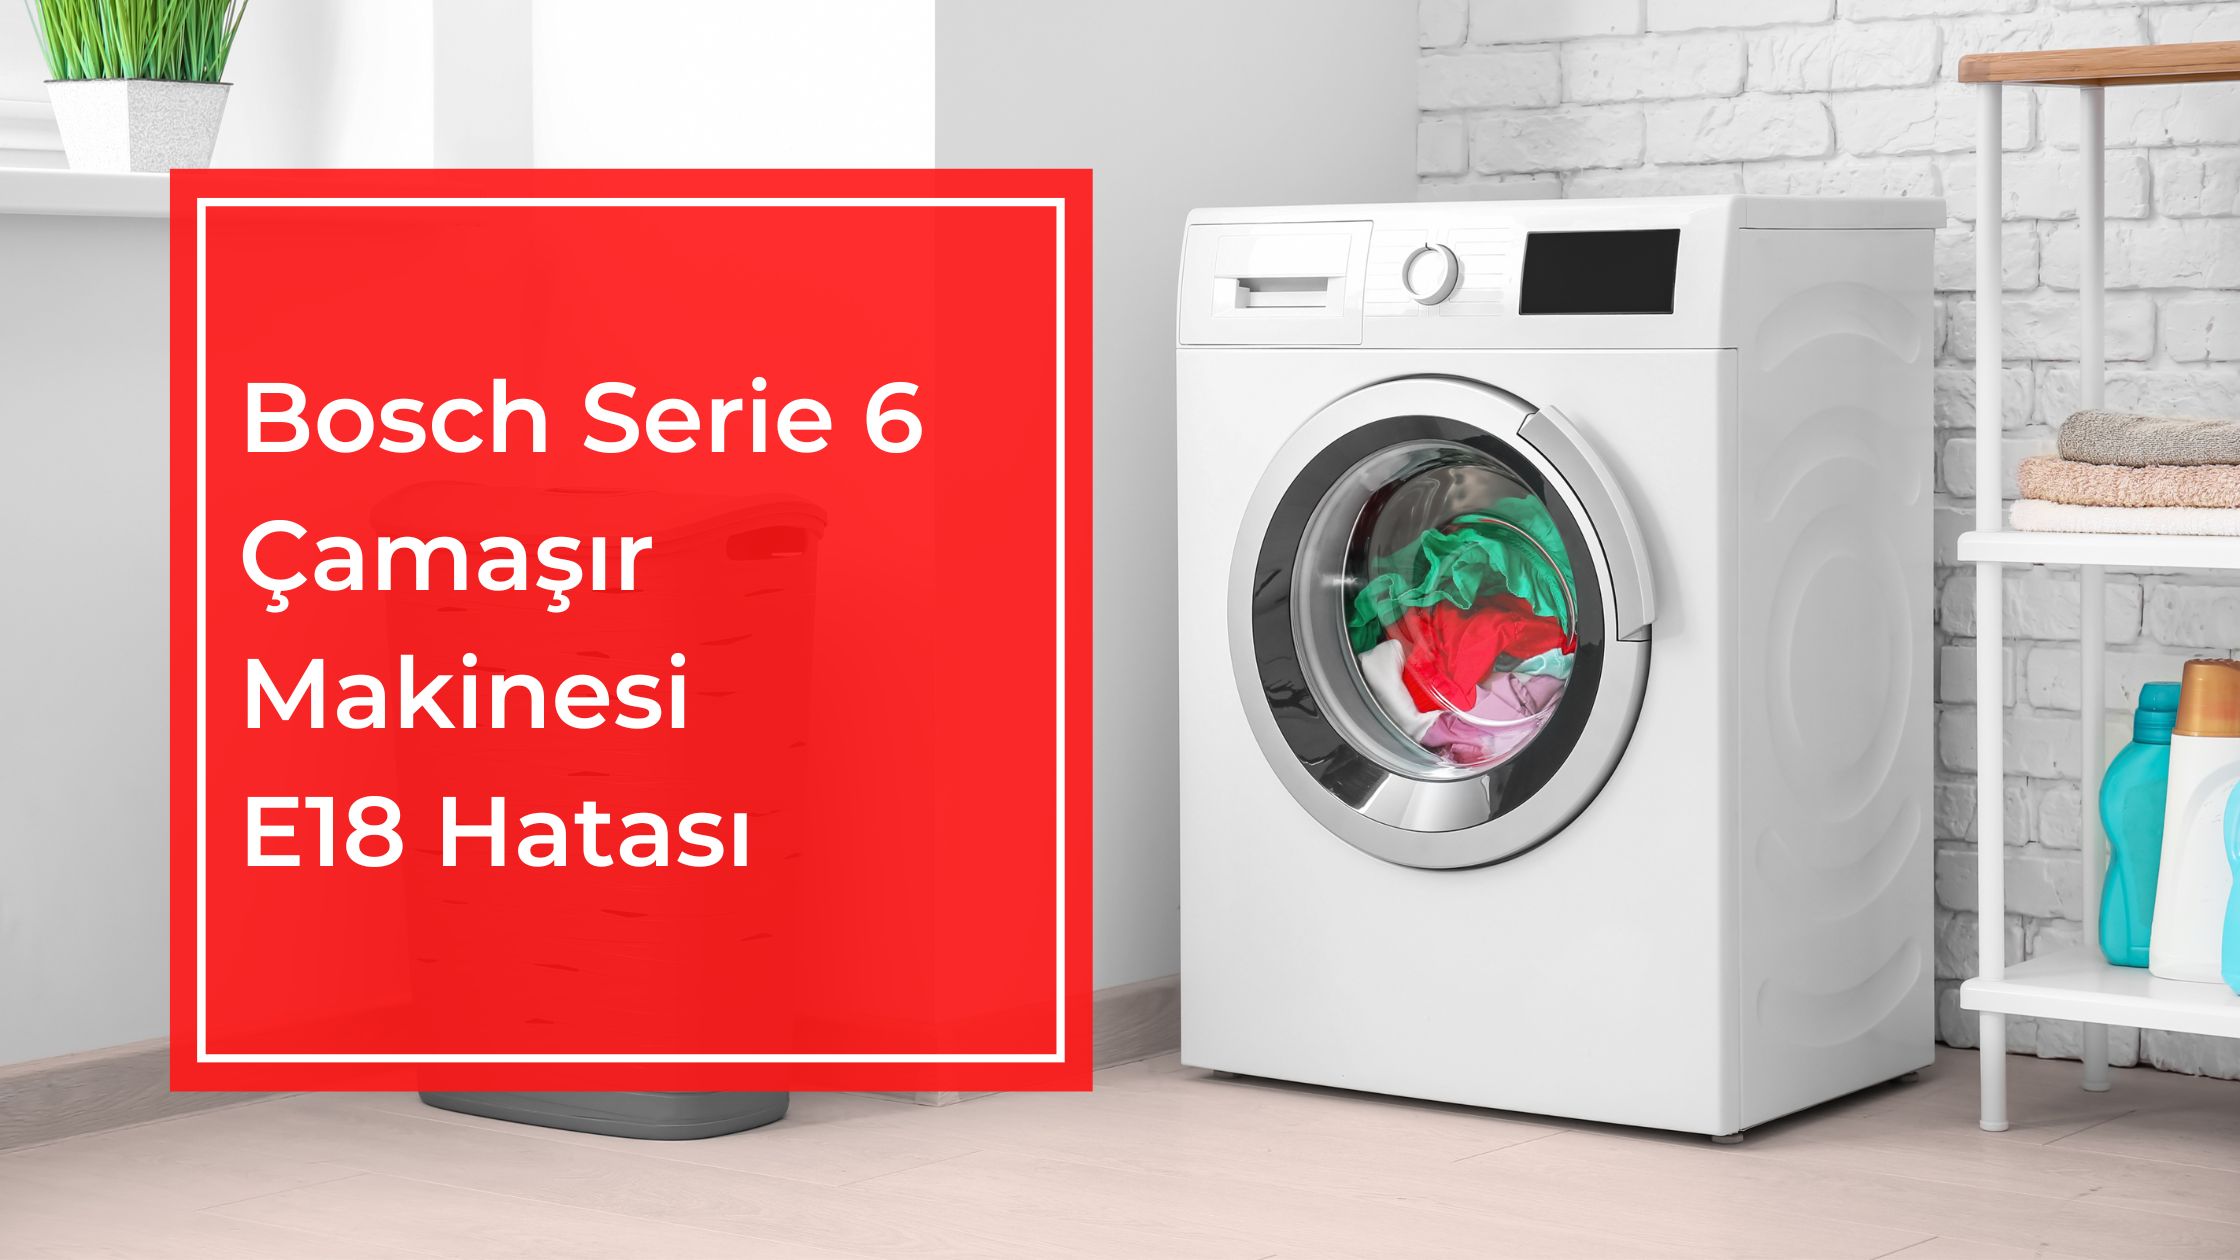 Bosch Serie 6 Çamaşır Makinesi E18 Hatası